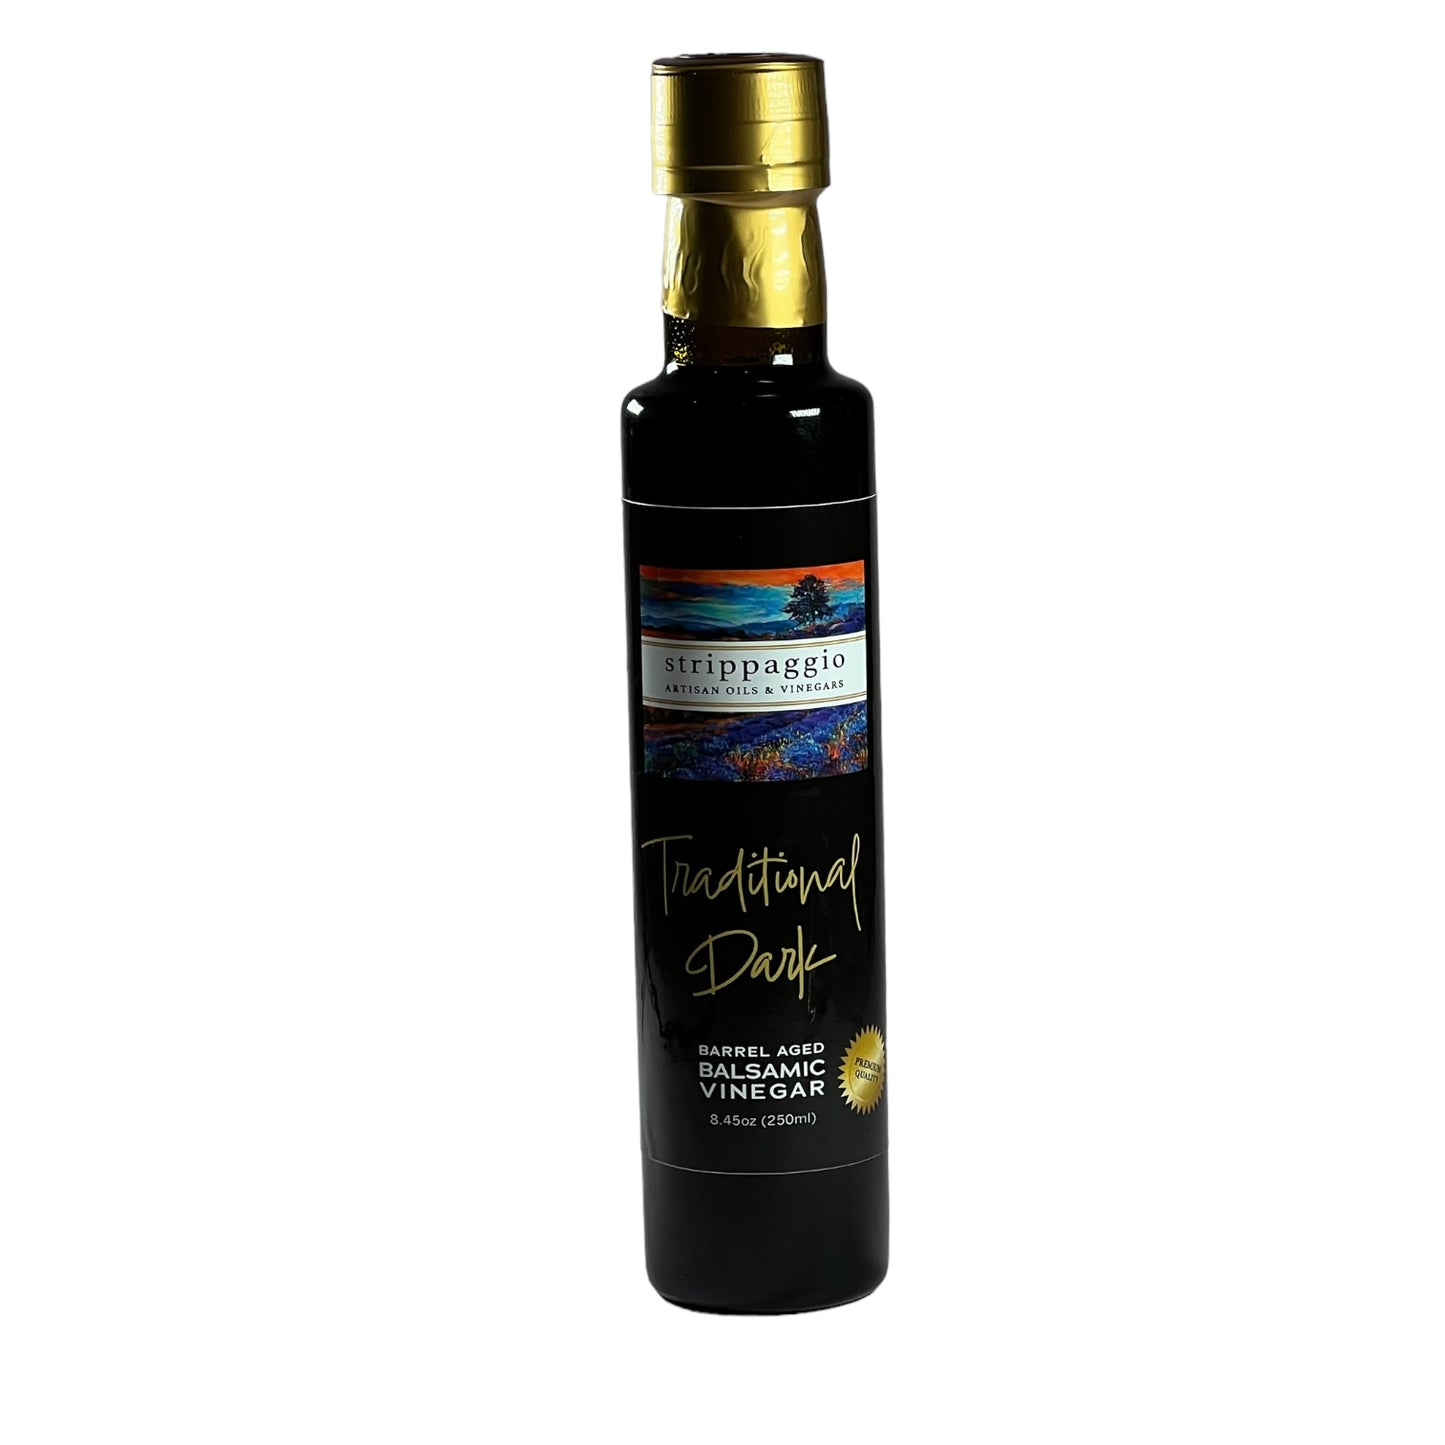 Traditional Dark Balsamic Vinegar - Barrel-Aged